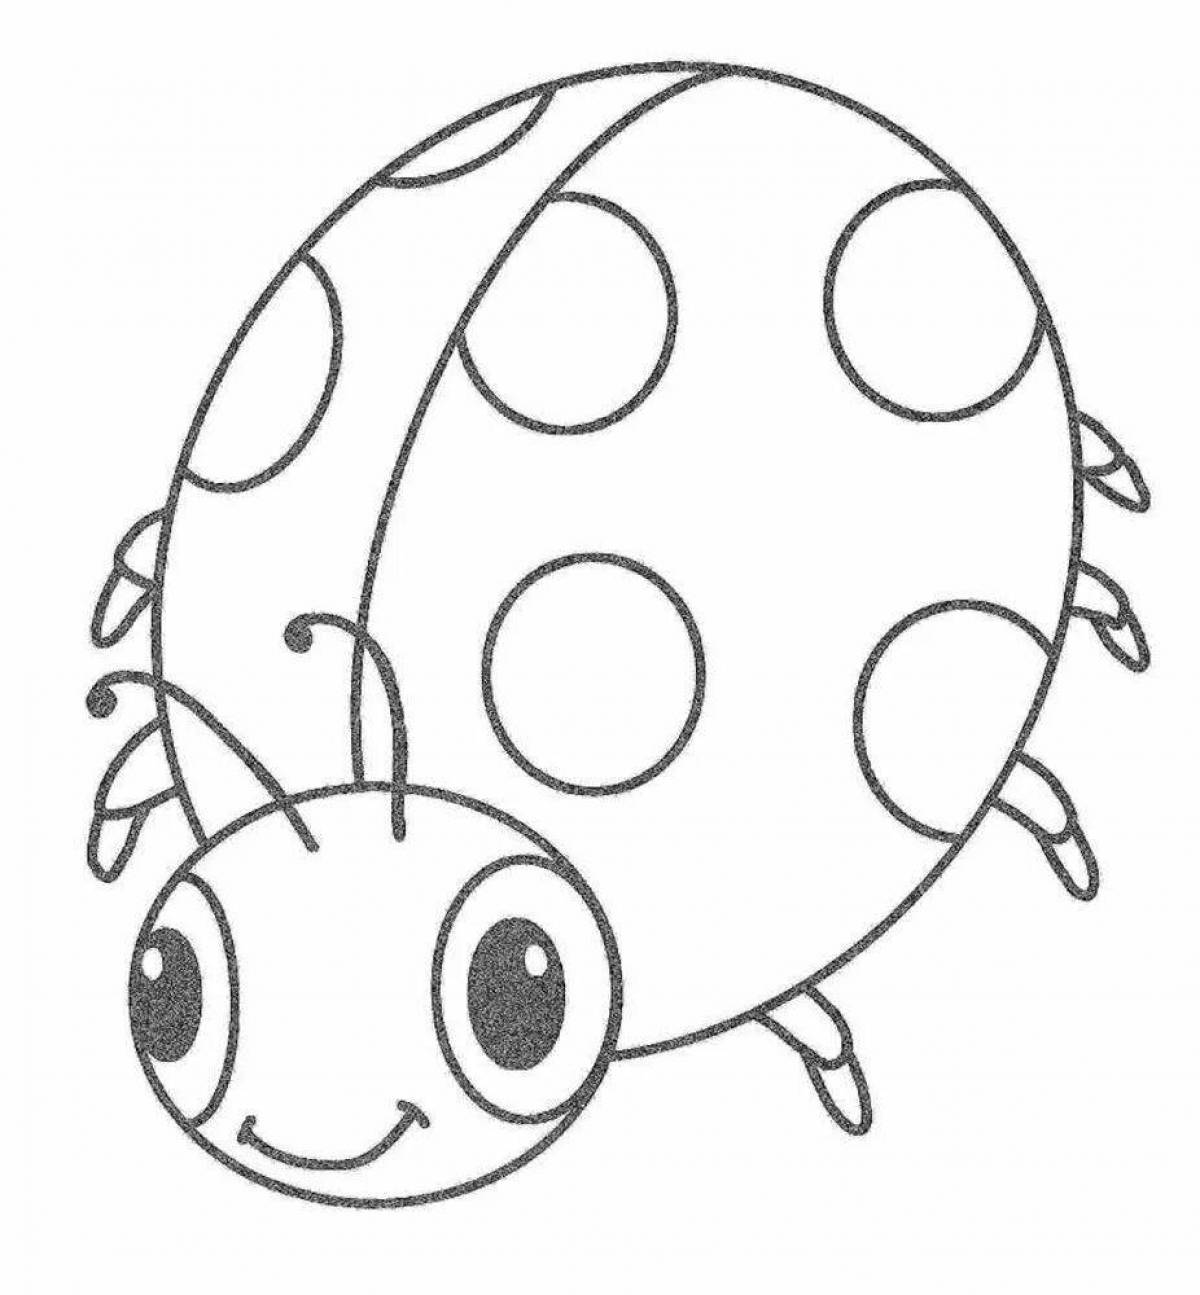 Charming ladybug drawing